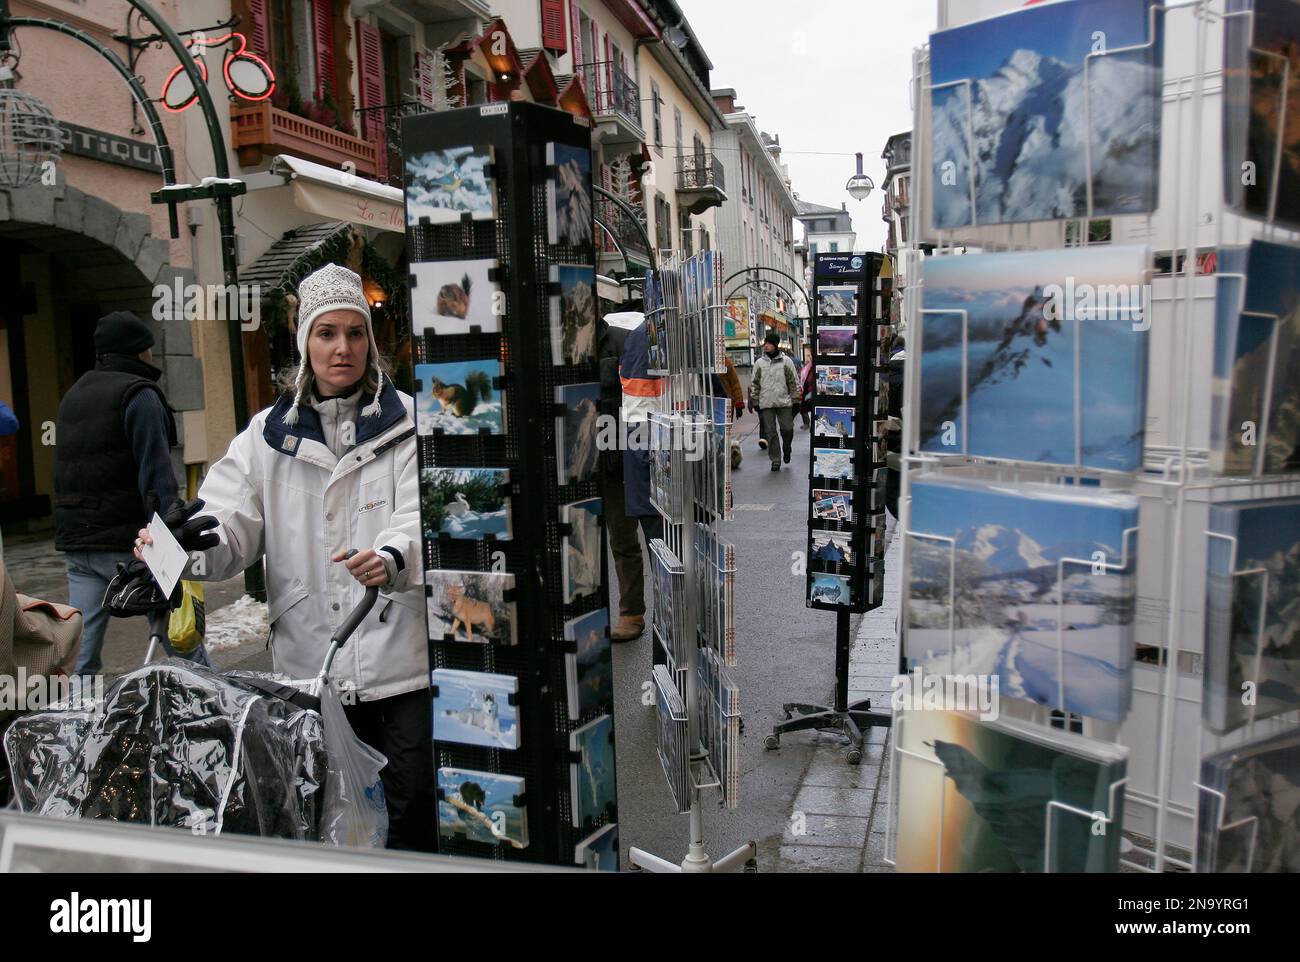 Donna che visita un negozio di cartoline turistiche che raffigurano il paesaggio alpino delle Alpi e le attrazioni presso uno stand laterale della strada che serve i turisti a Cham... Foto Stock